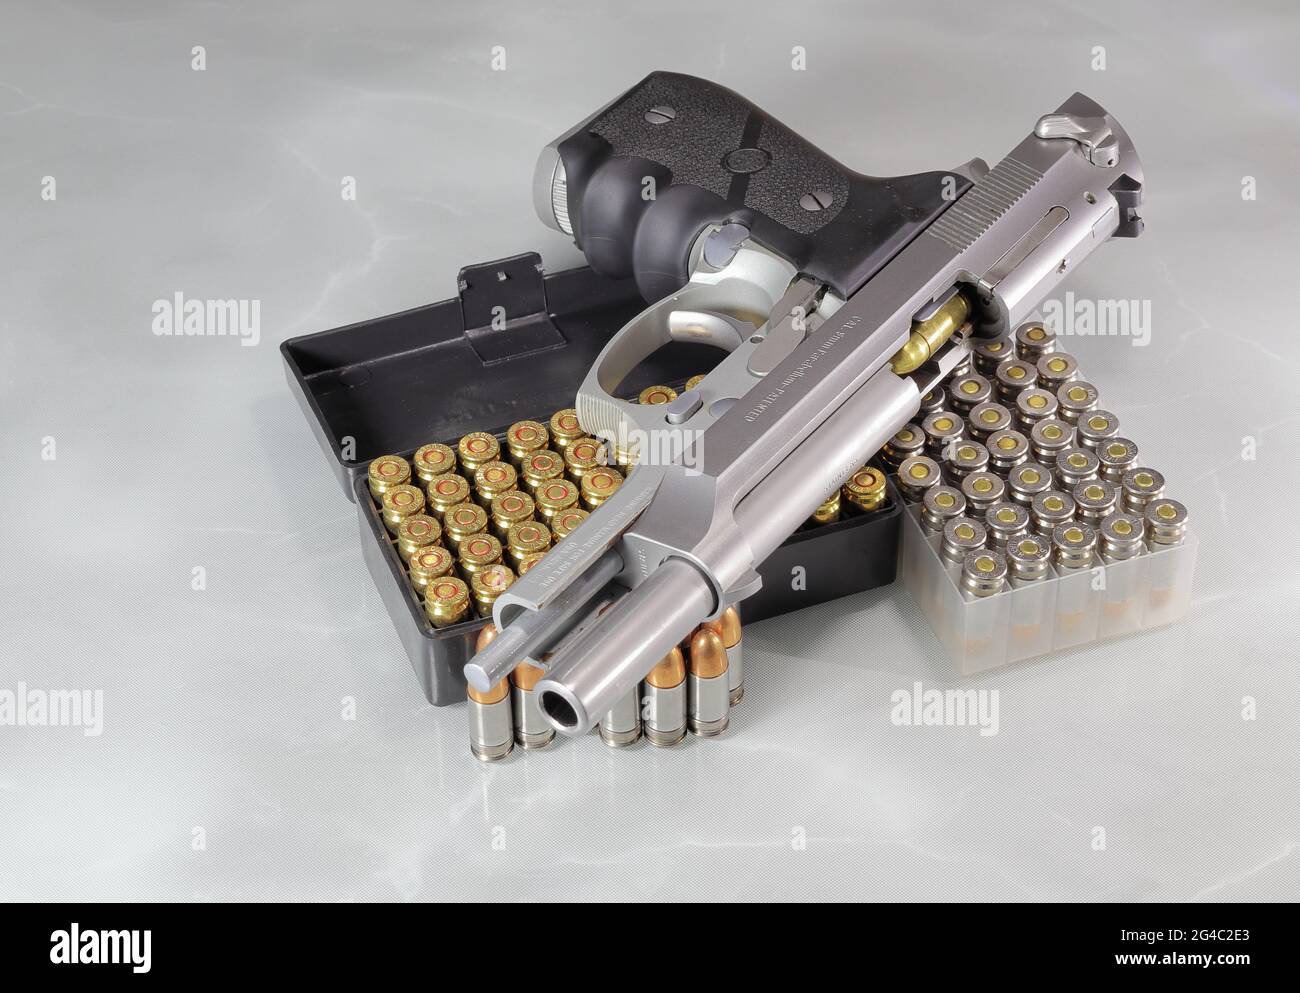 Beretta 92FS o M9 pistola de mano abierta y paquete de balas 9mm parabellum aislado en la superficie de reflexión. Foto de stock